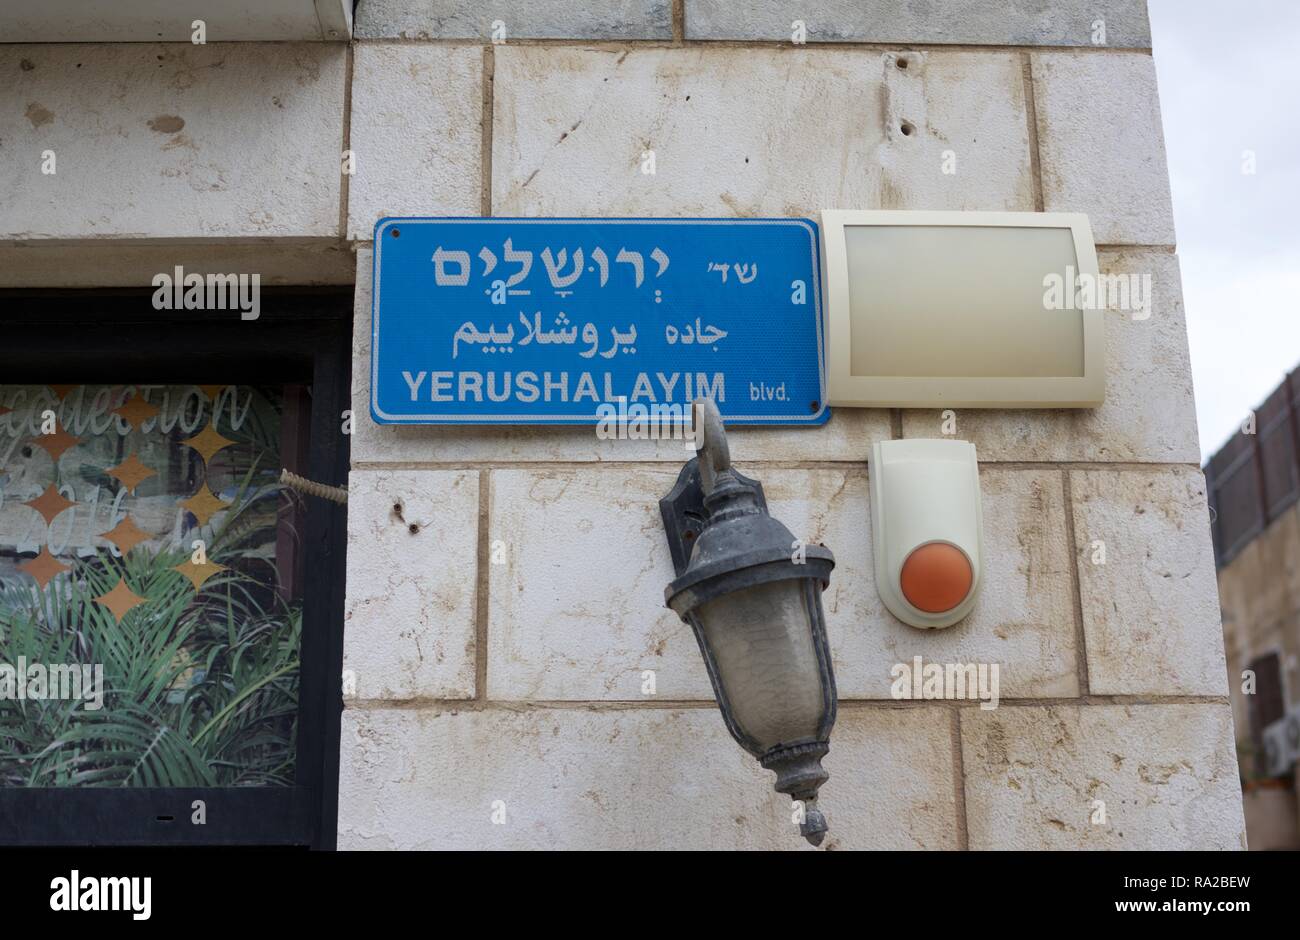 Trilingual street sign in Tel Aviv Stock Photo